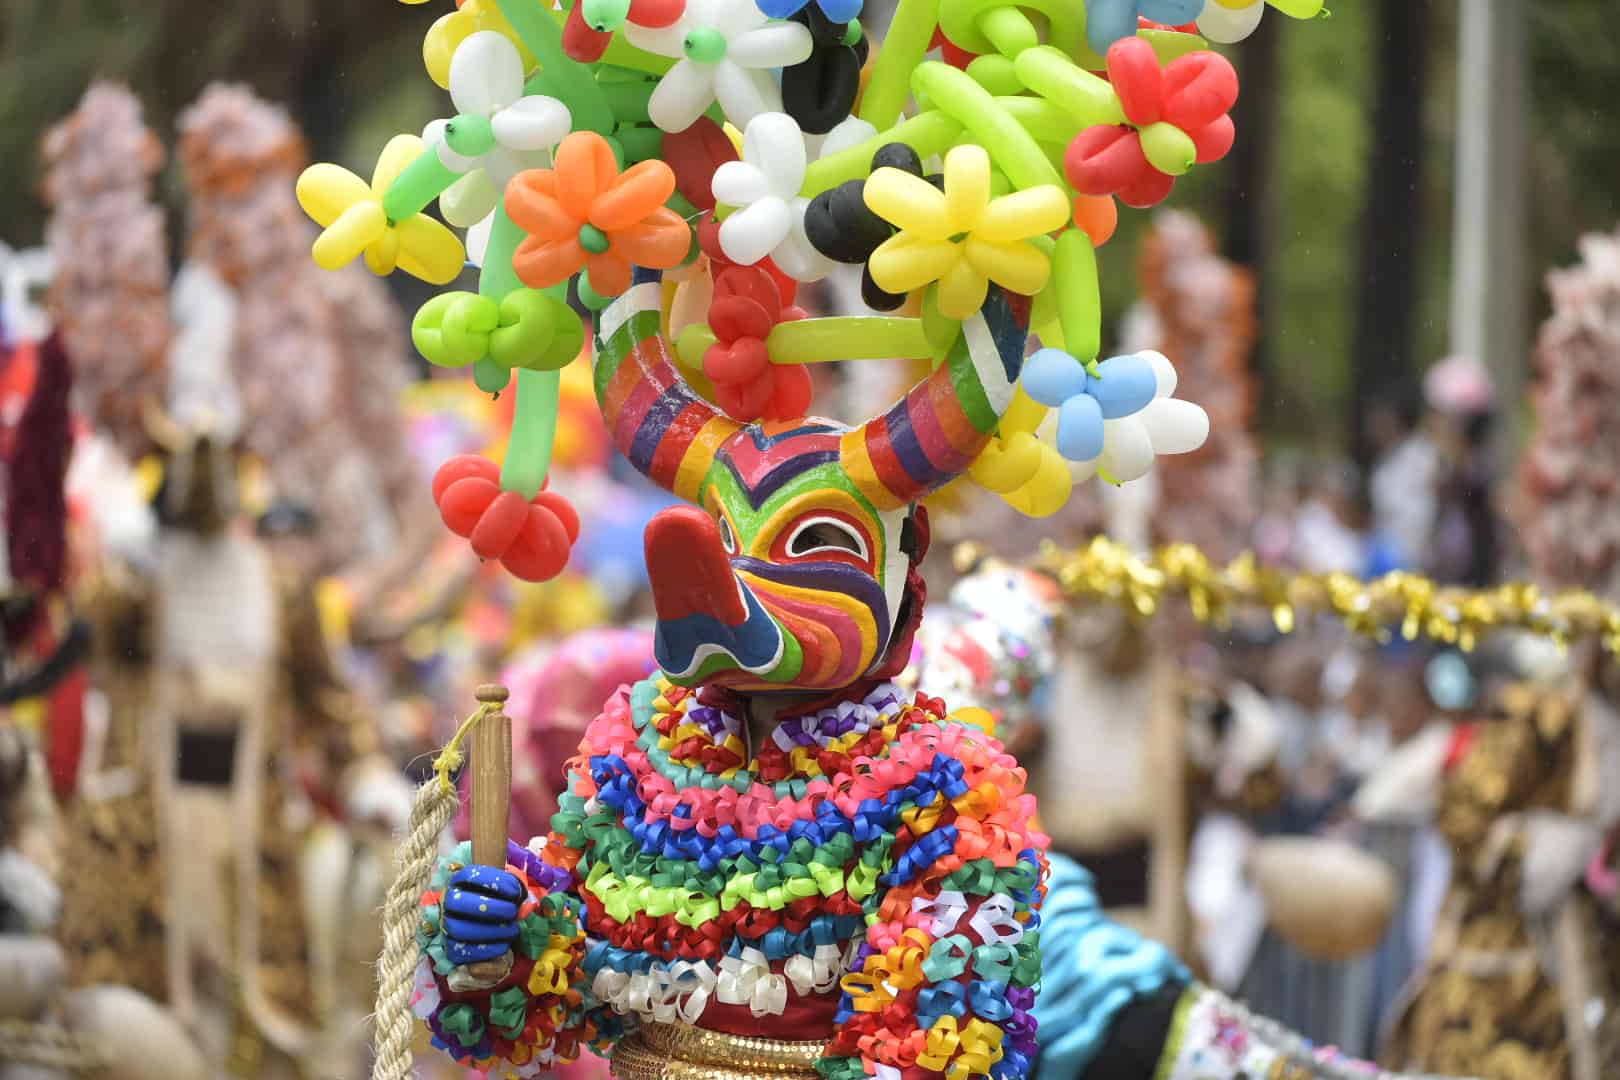 Color, color y más color en el atuendo de uno de los participantes en el Desfile Nacional del Carnaval.